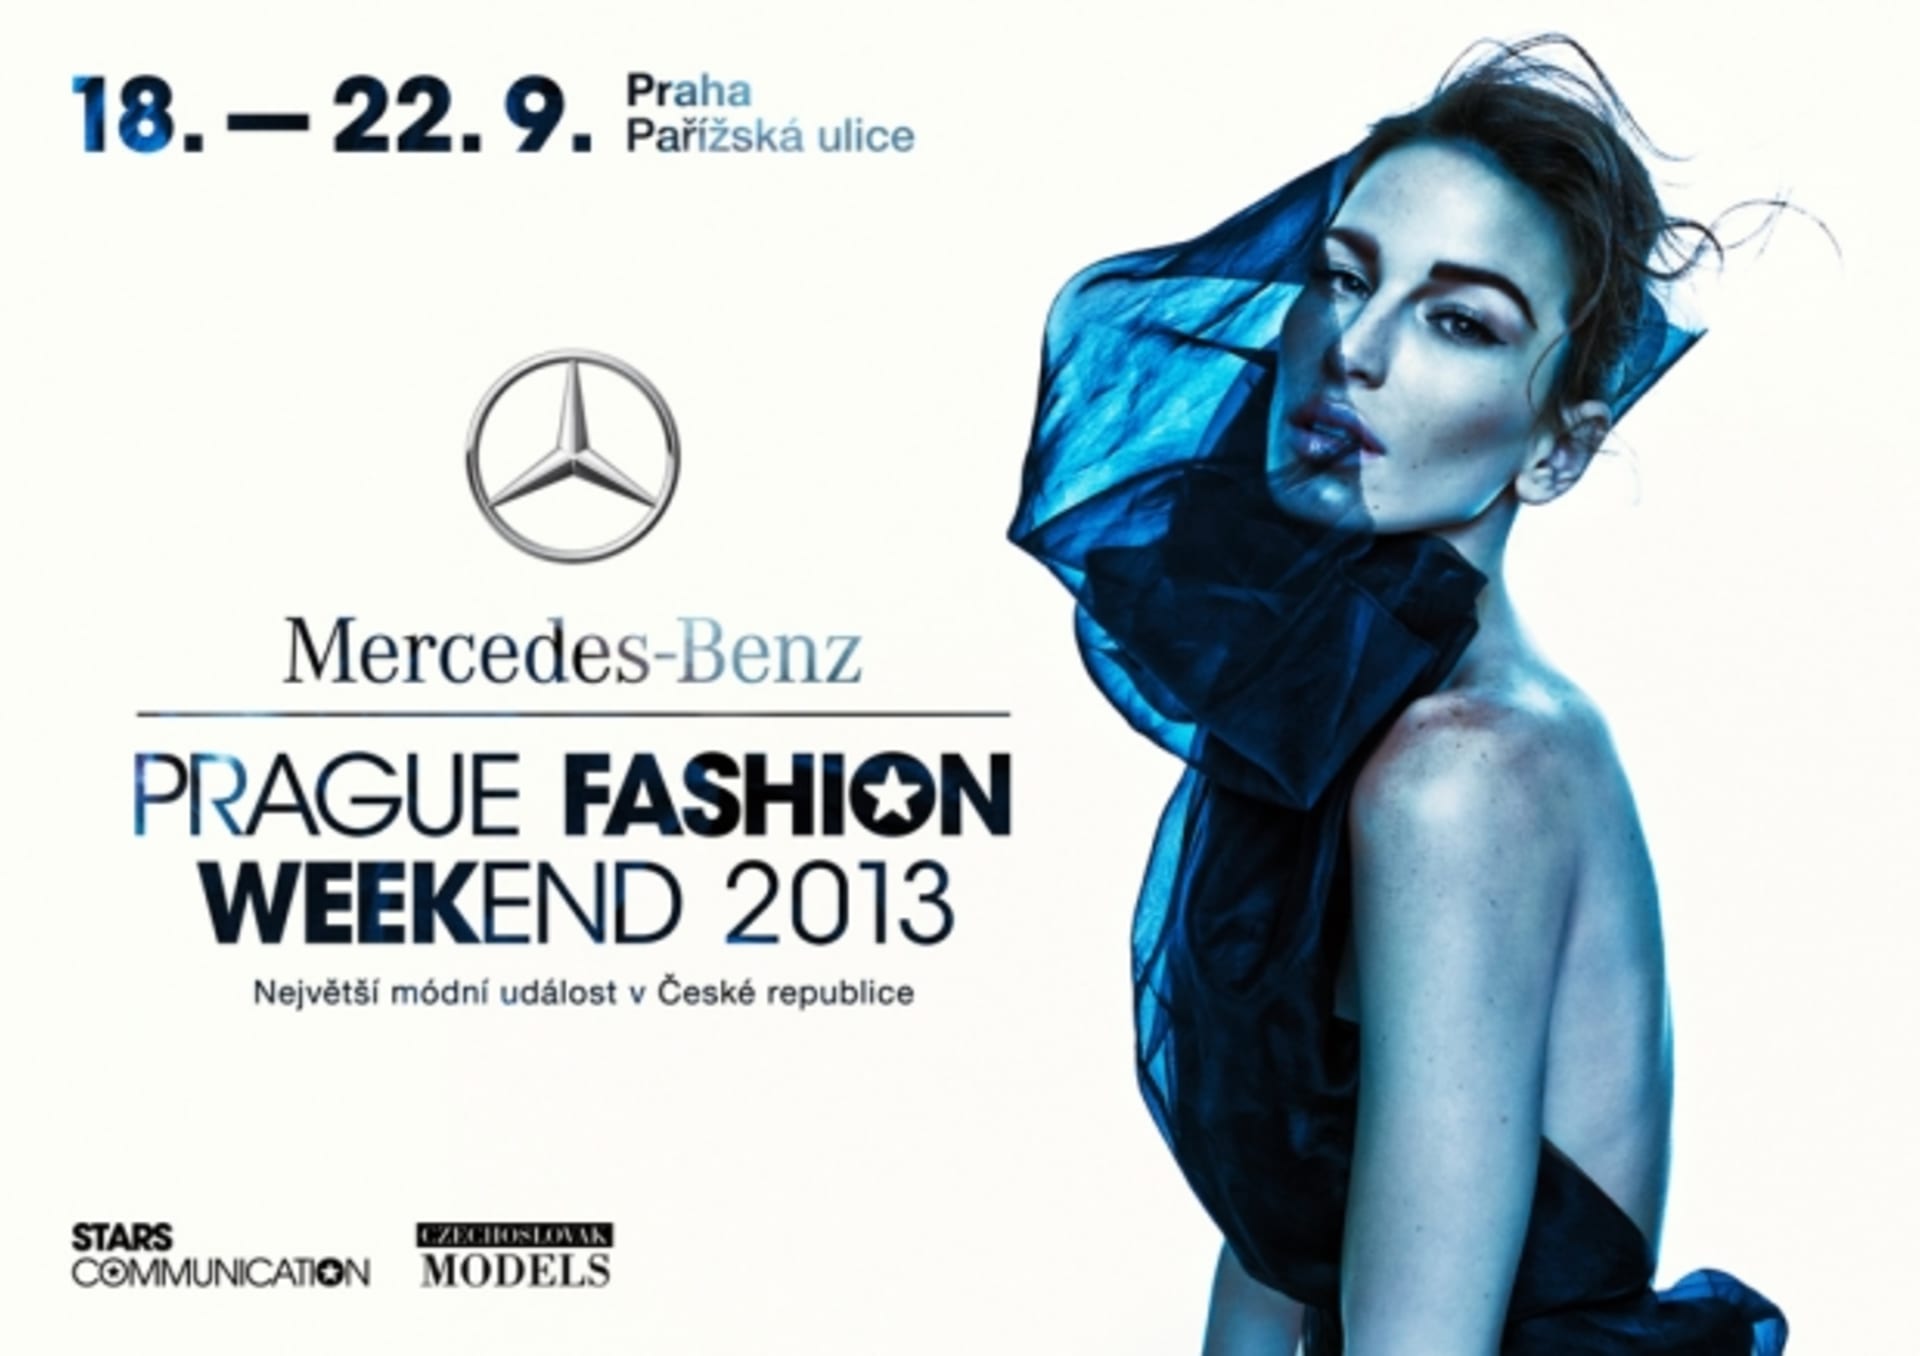 MBPrague Fashion Weekend 2013